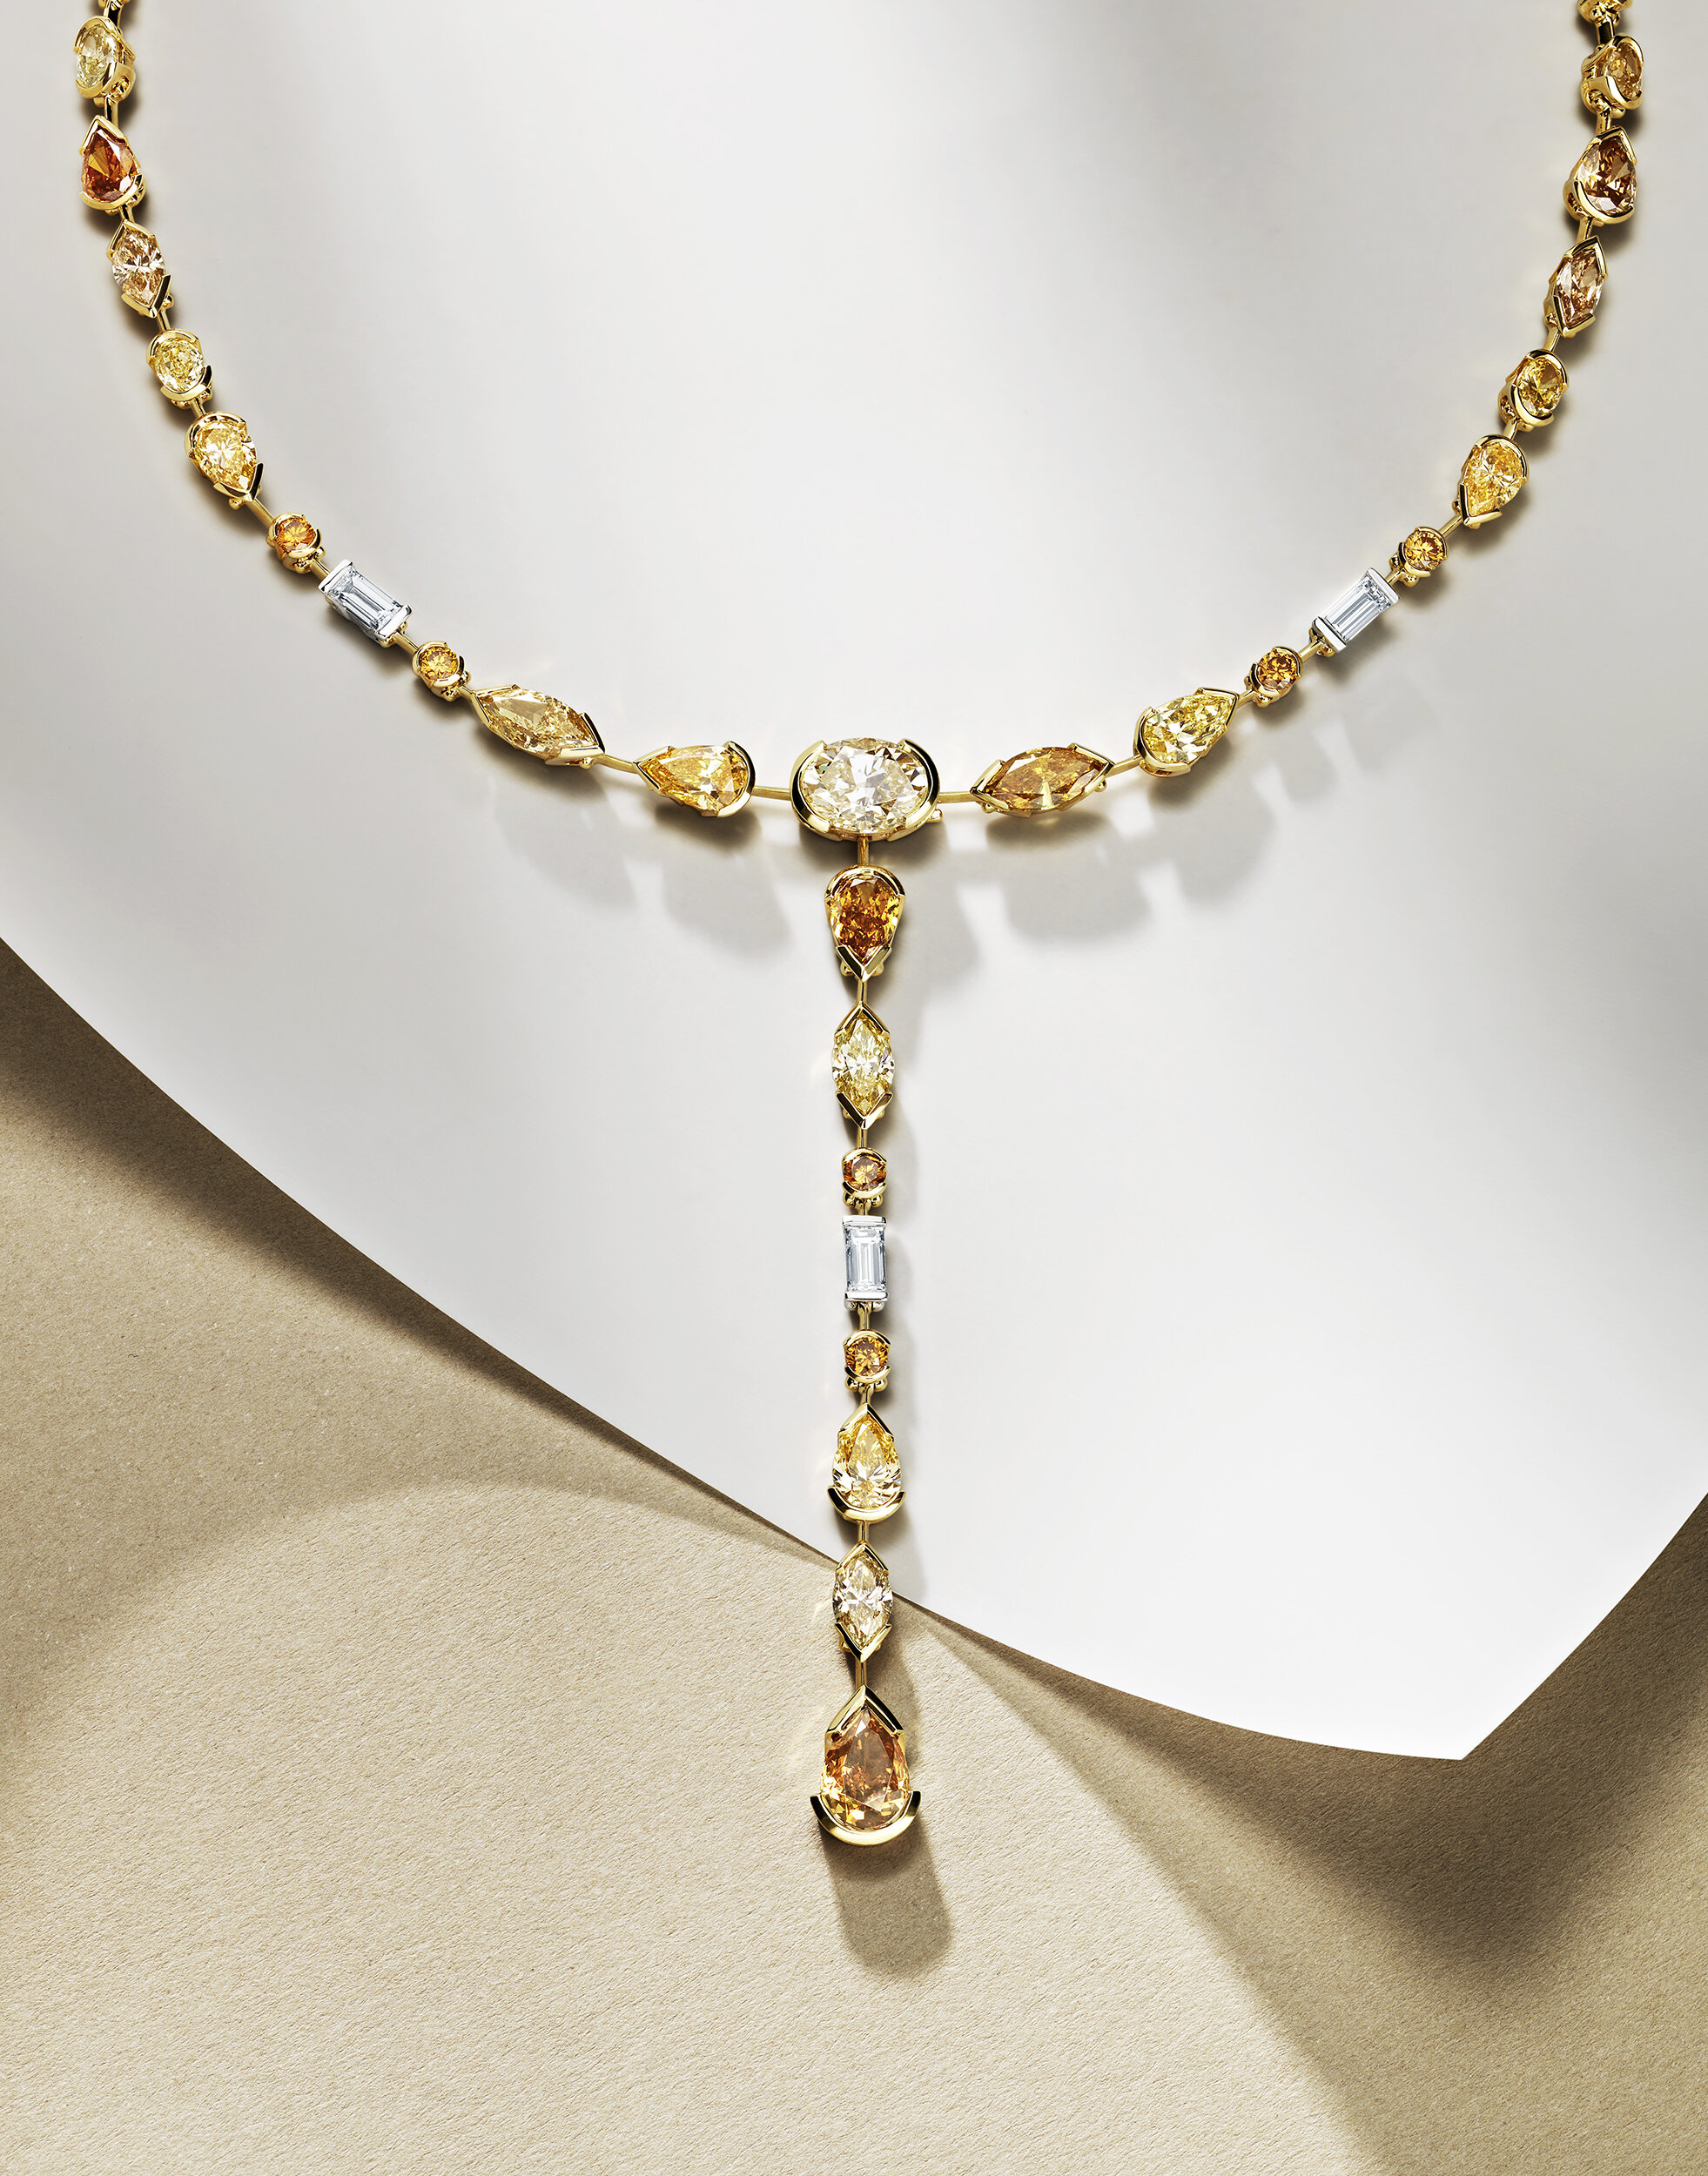  Diamond necklace shot for De Beers 